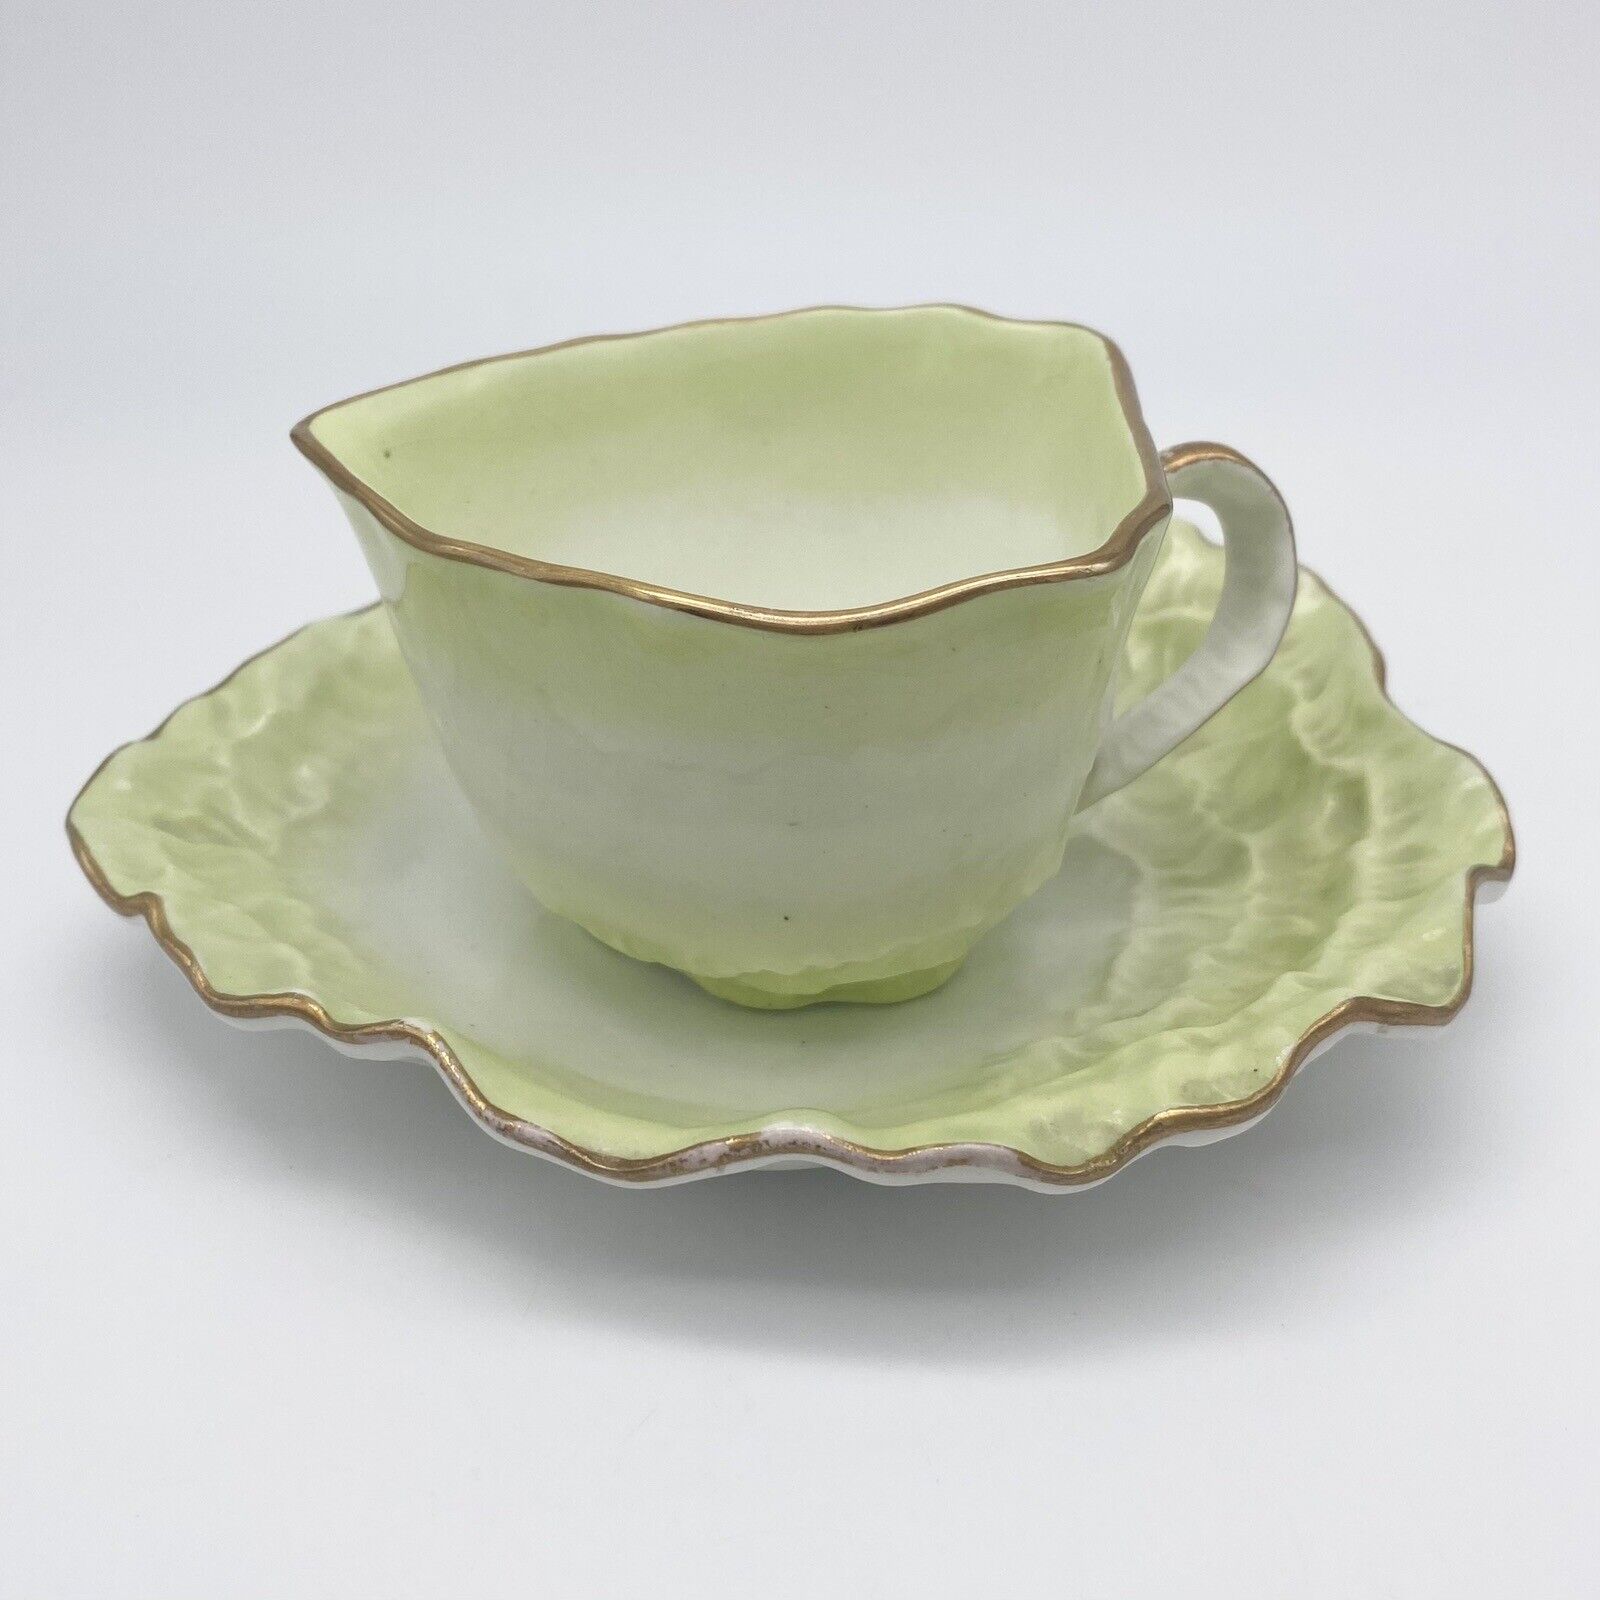 Antique Turner Porcelain Lettuce Leaf Creamer And Underplate Set Made In England